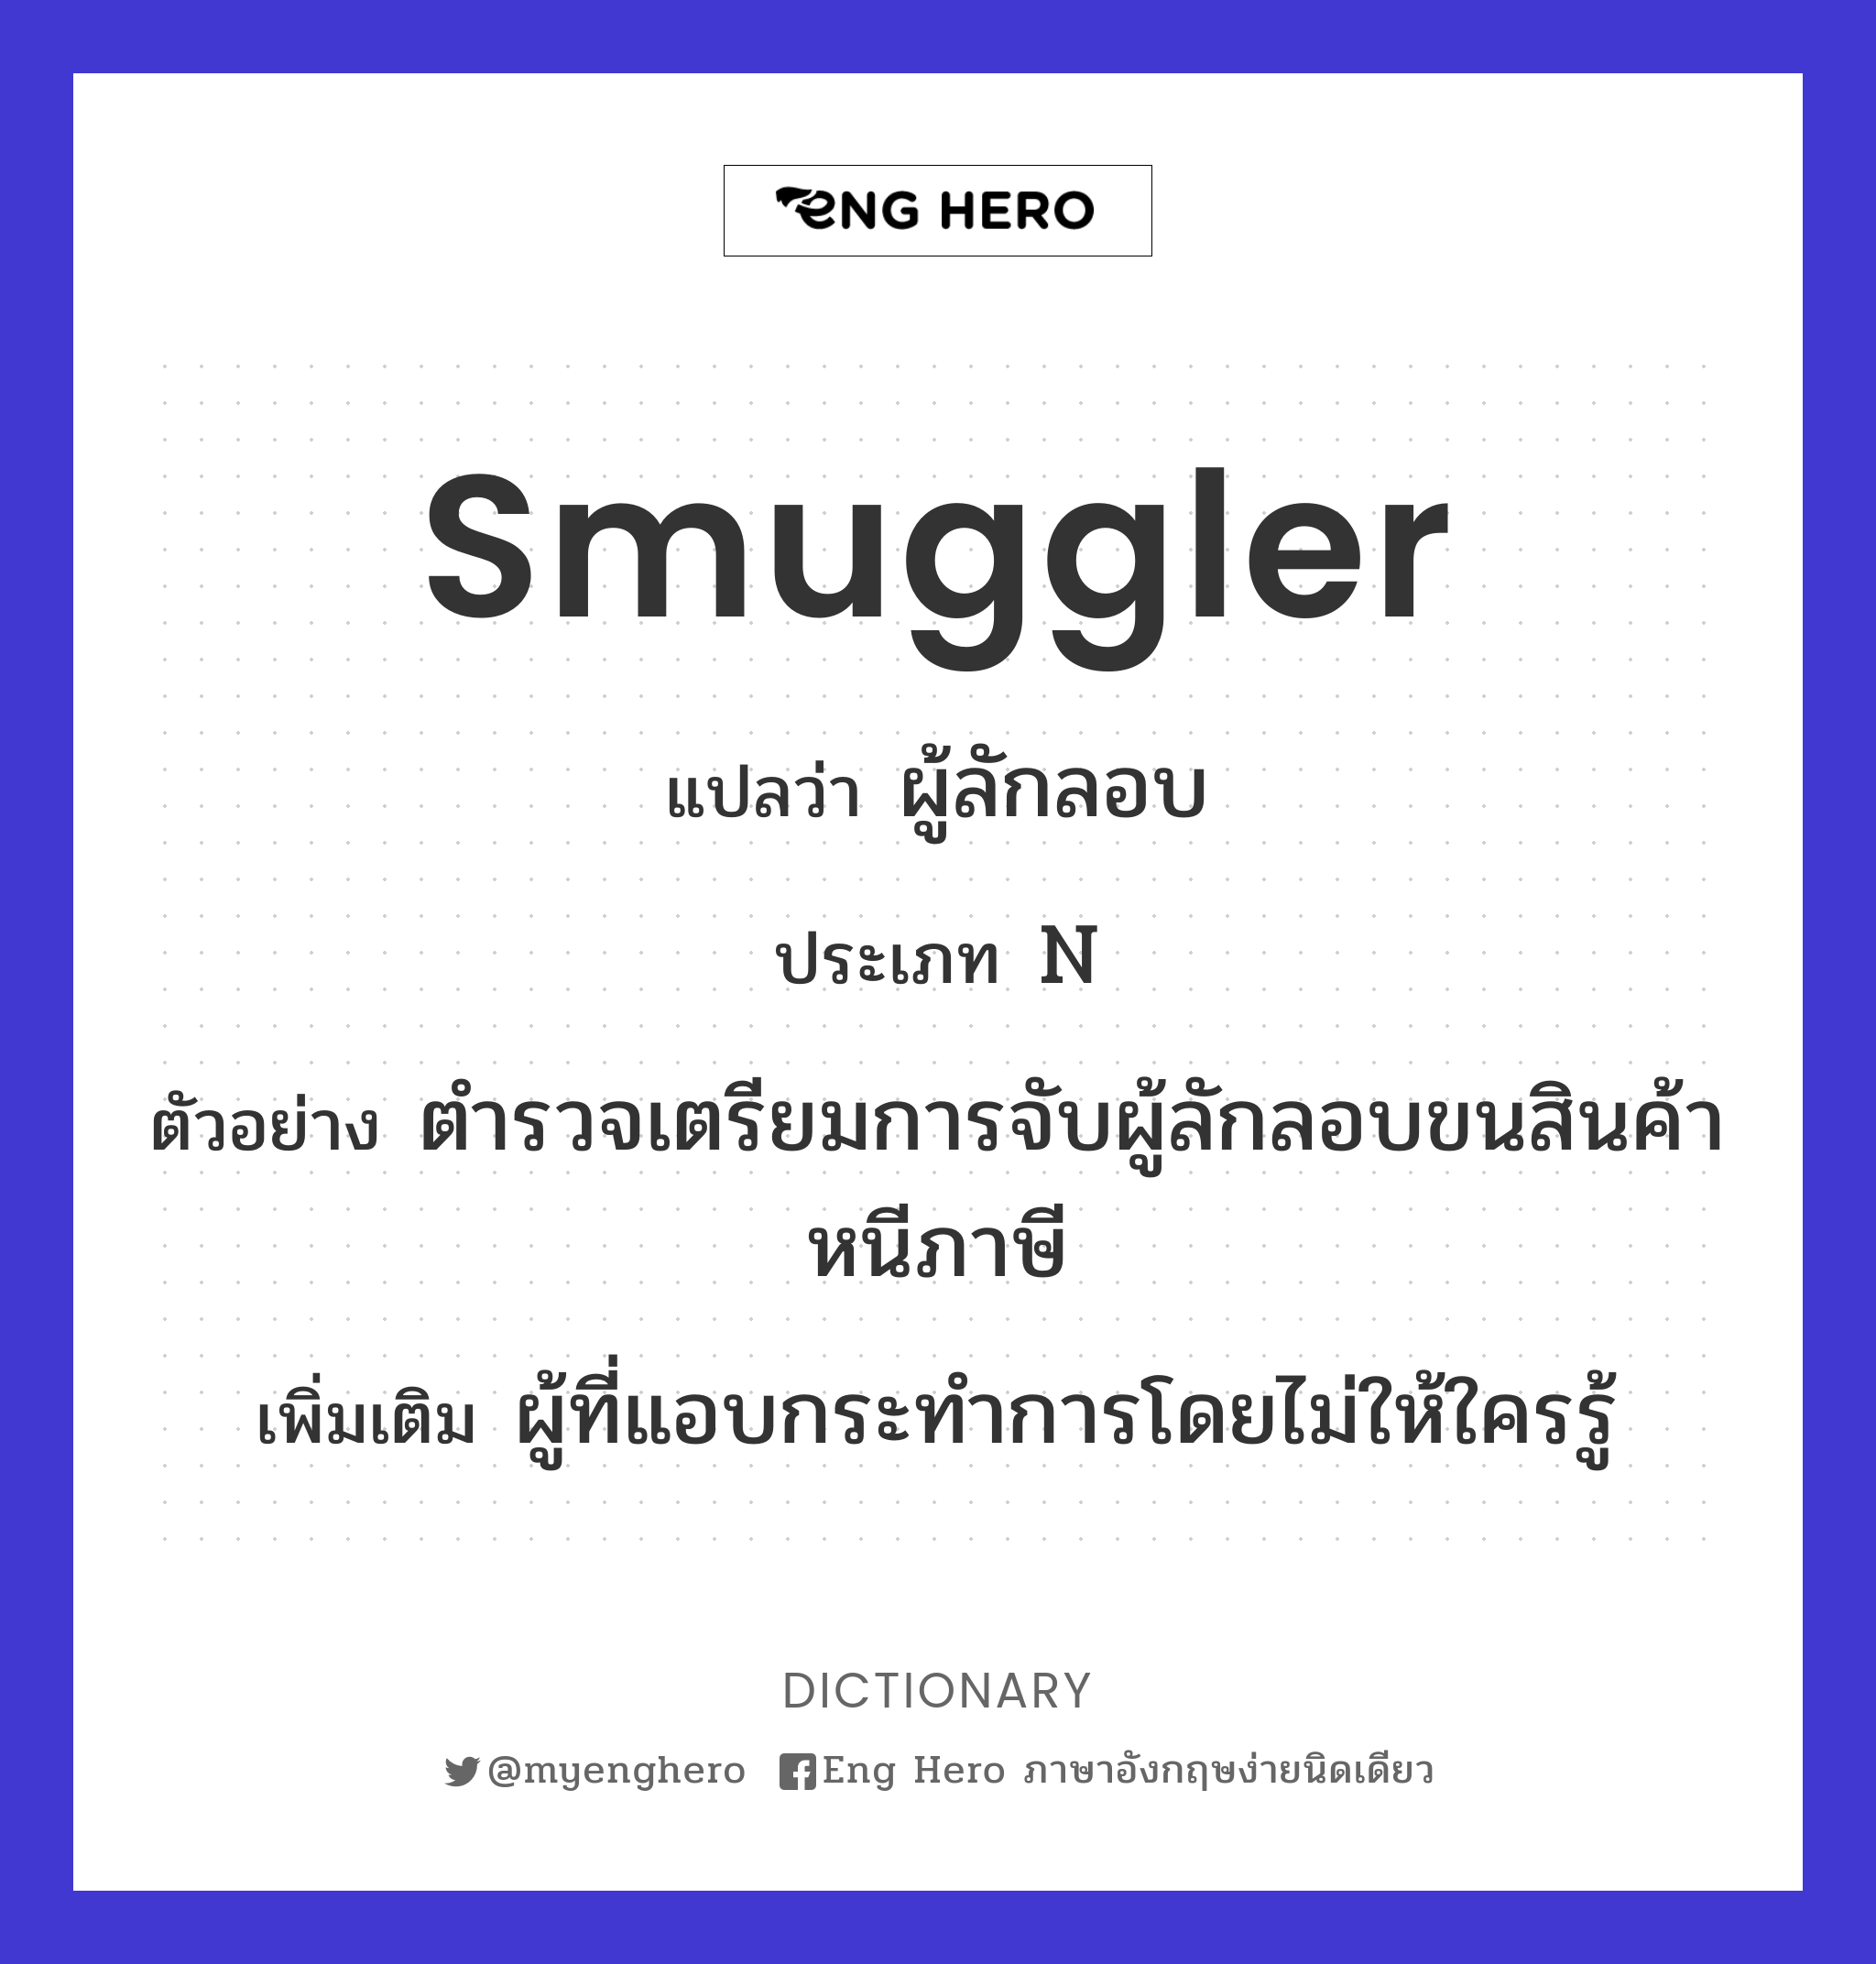 smuggler